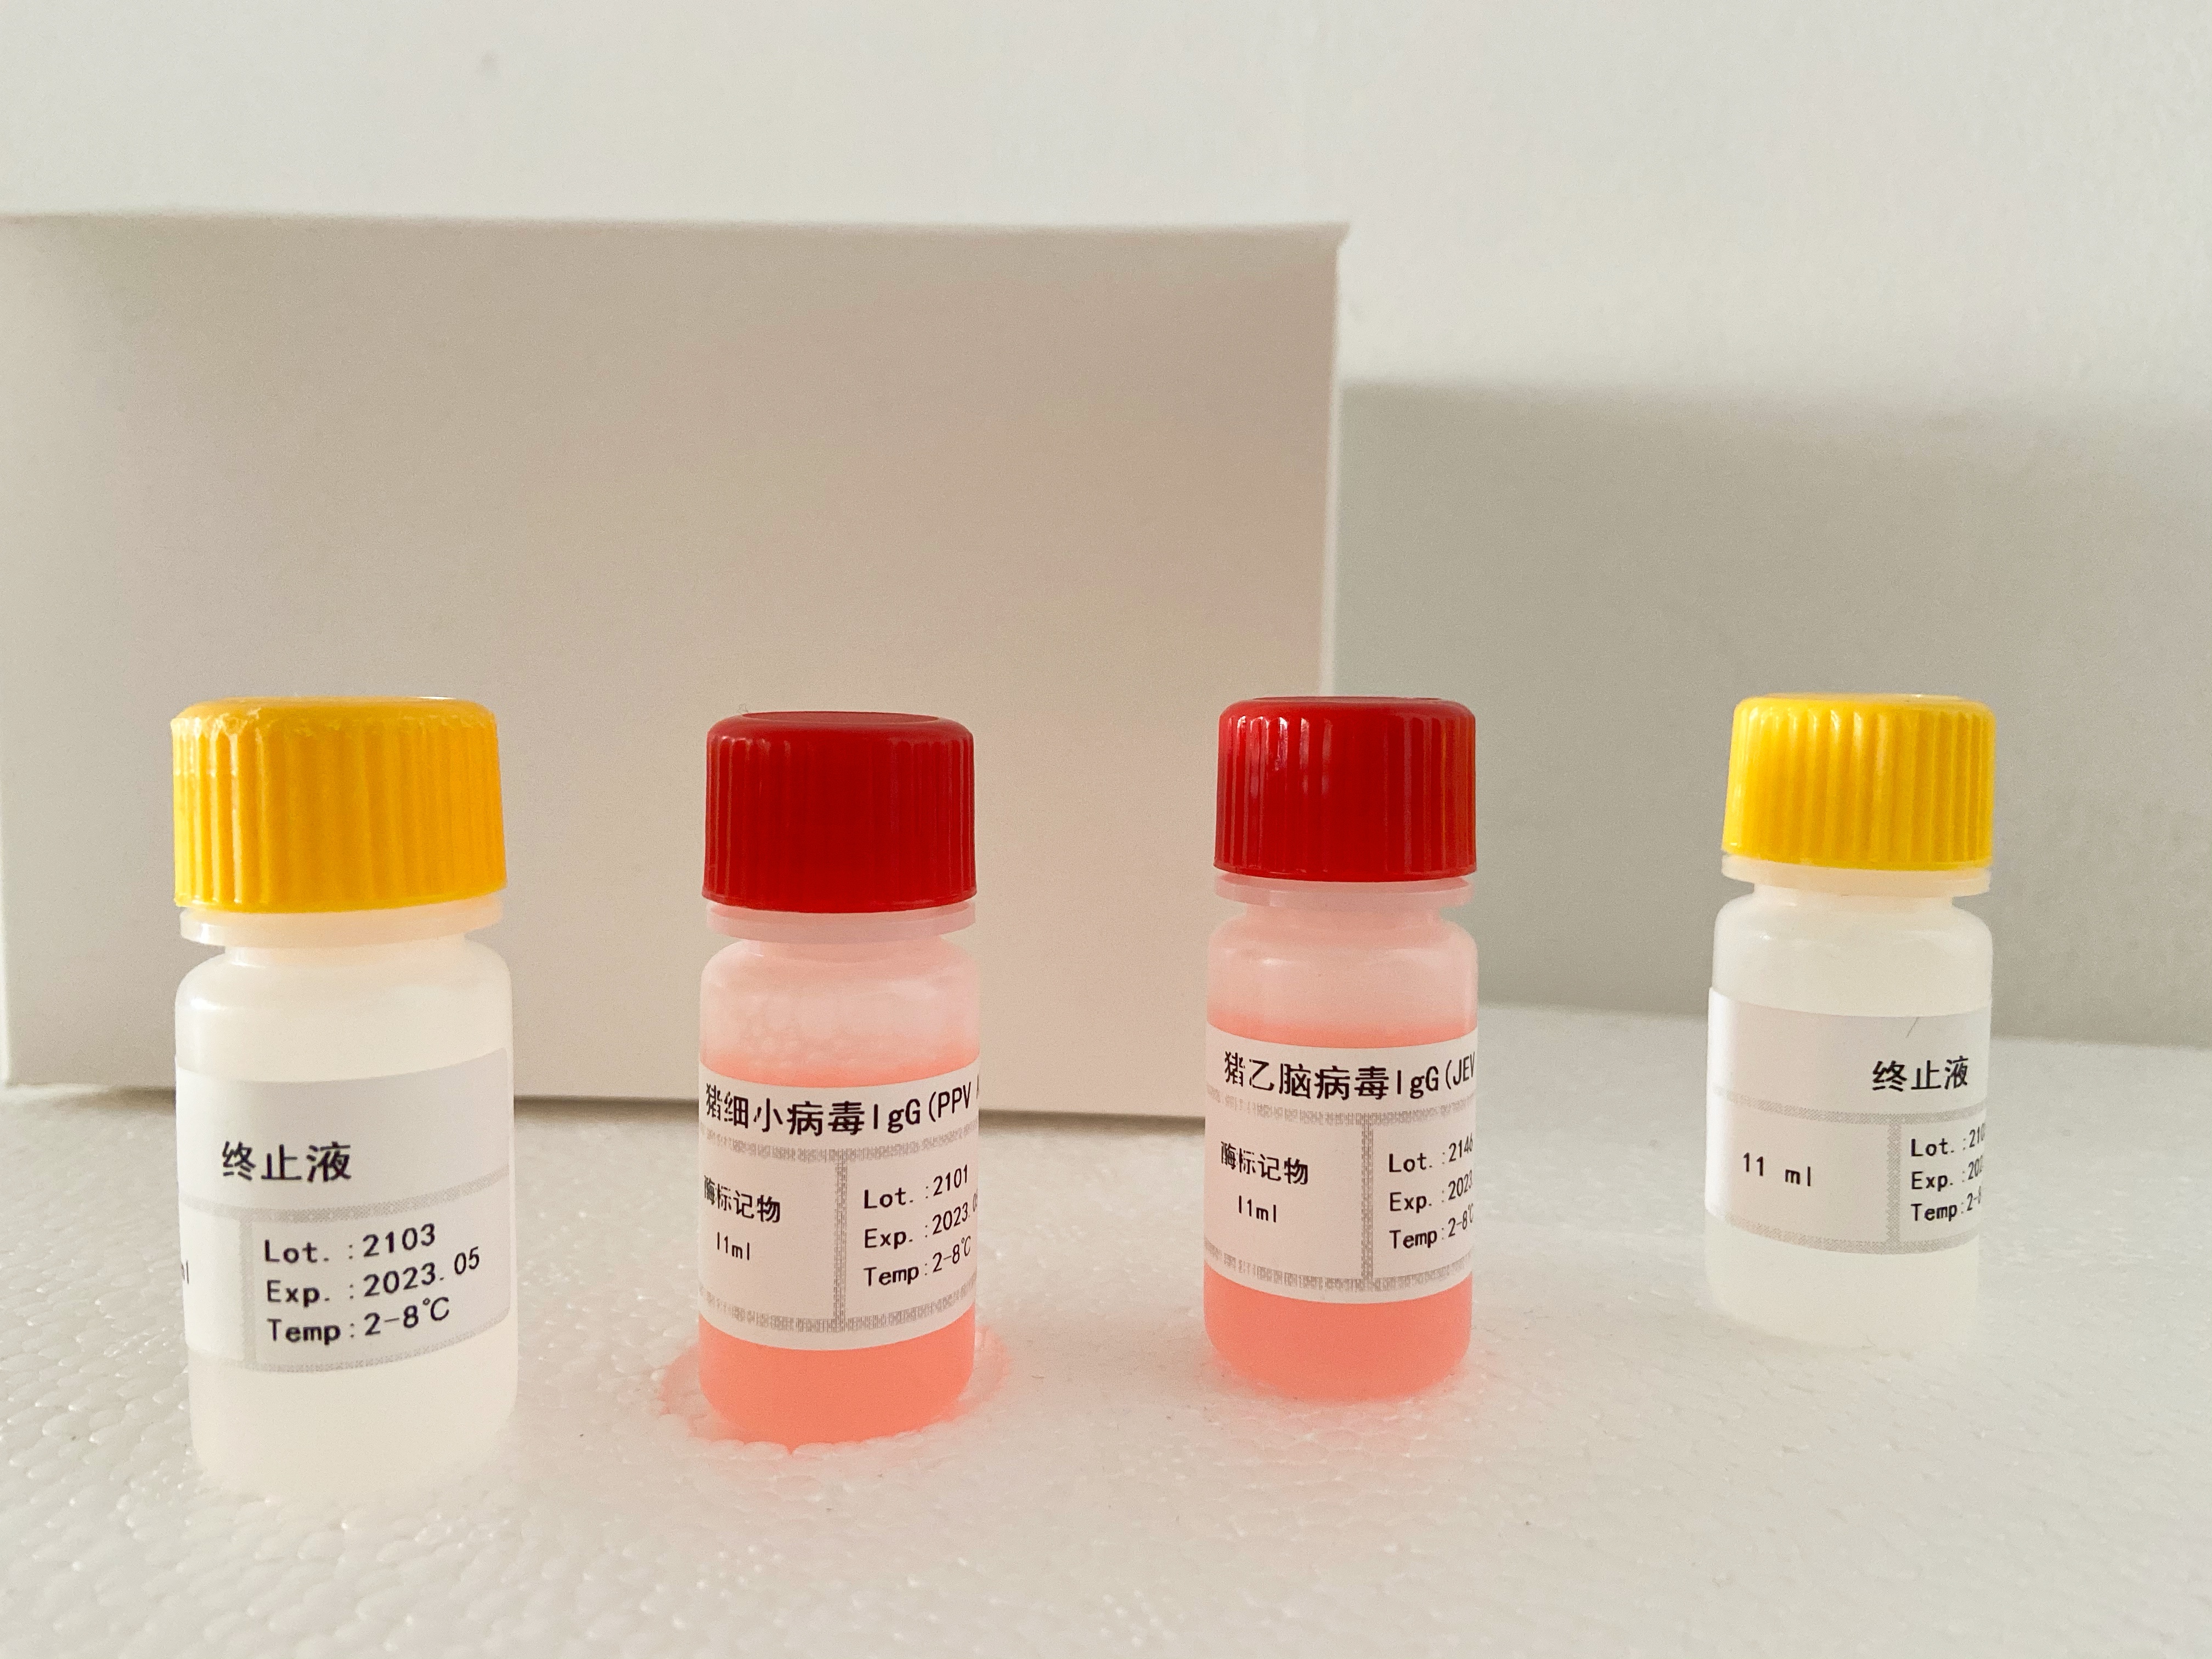 小鼠抗人生长激素抗体(IgG)检测试剂盒